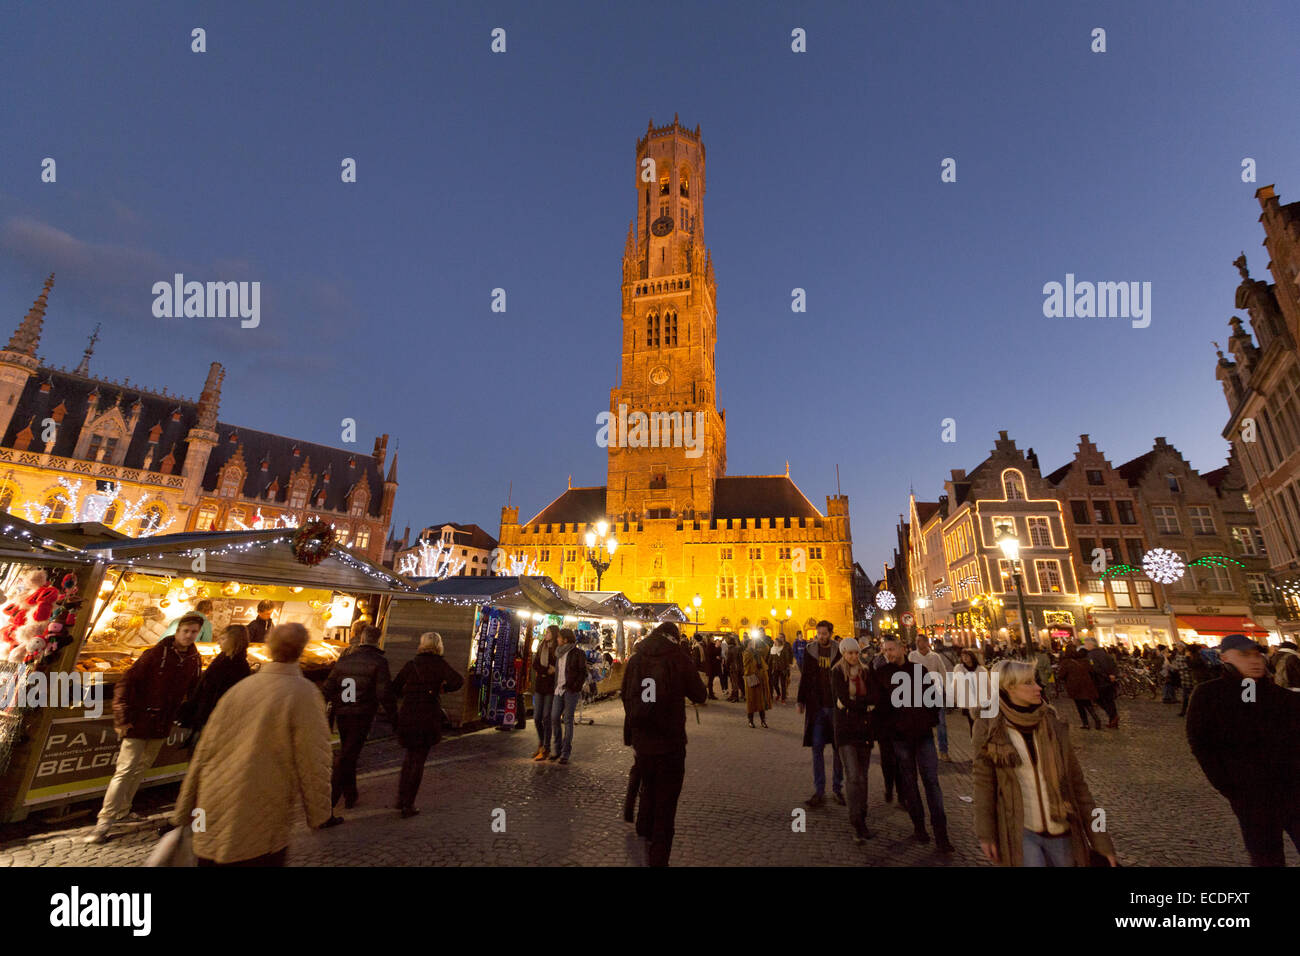 Der Belfried und Weihnachten Markt bei Dämmerung, Marktplatz, Brügge, Belgien Stockfoto